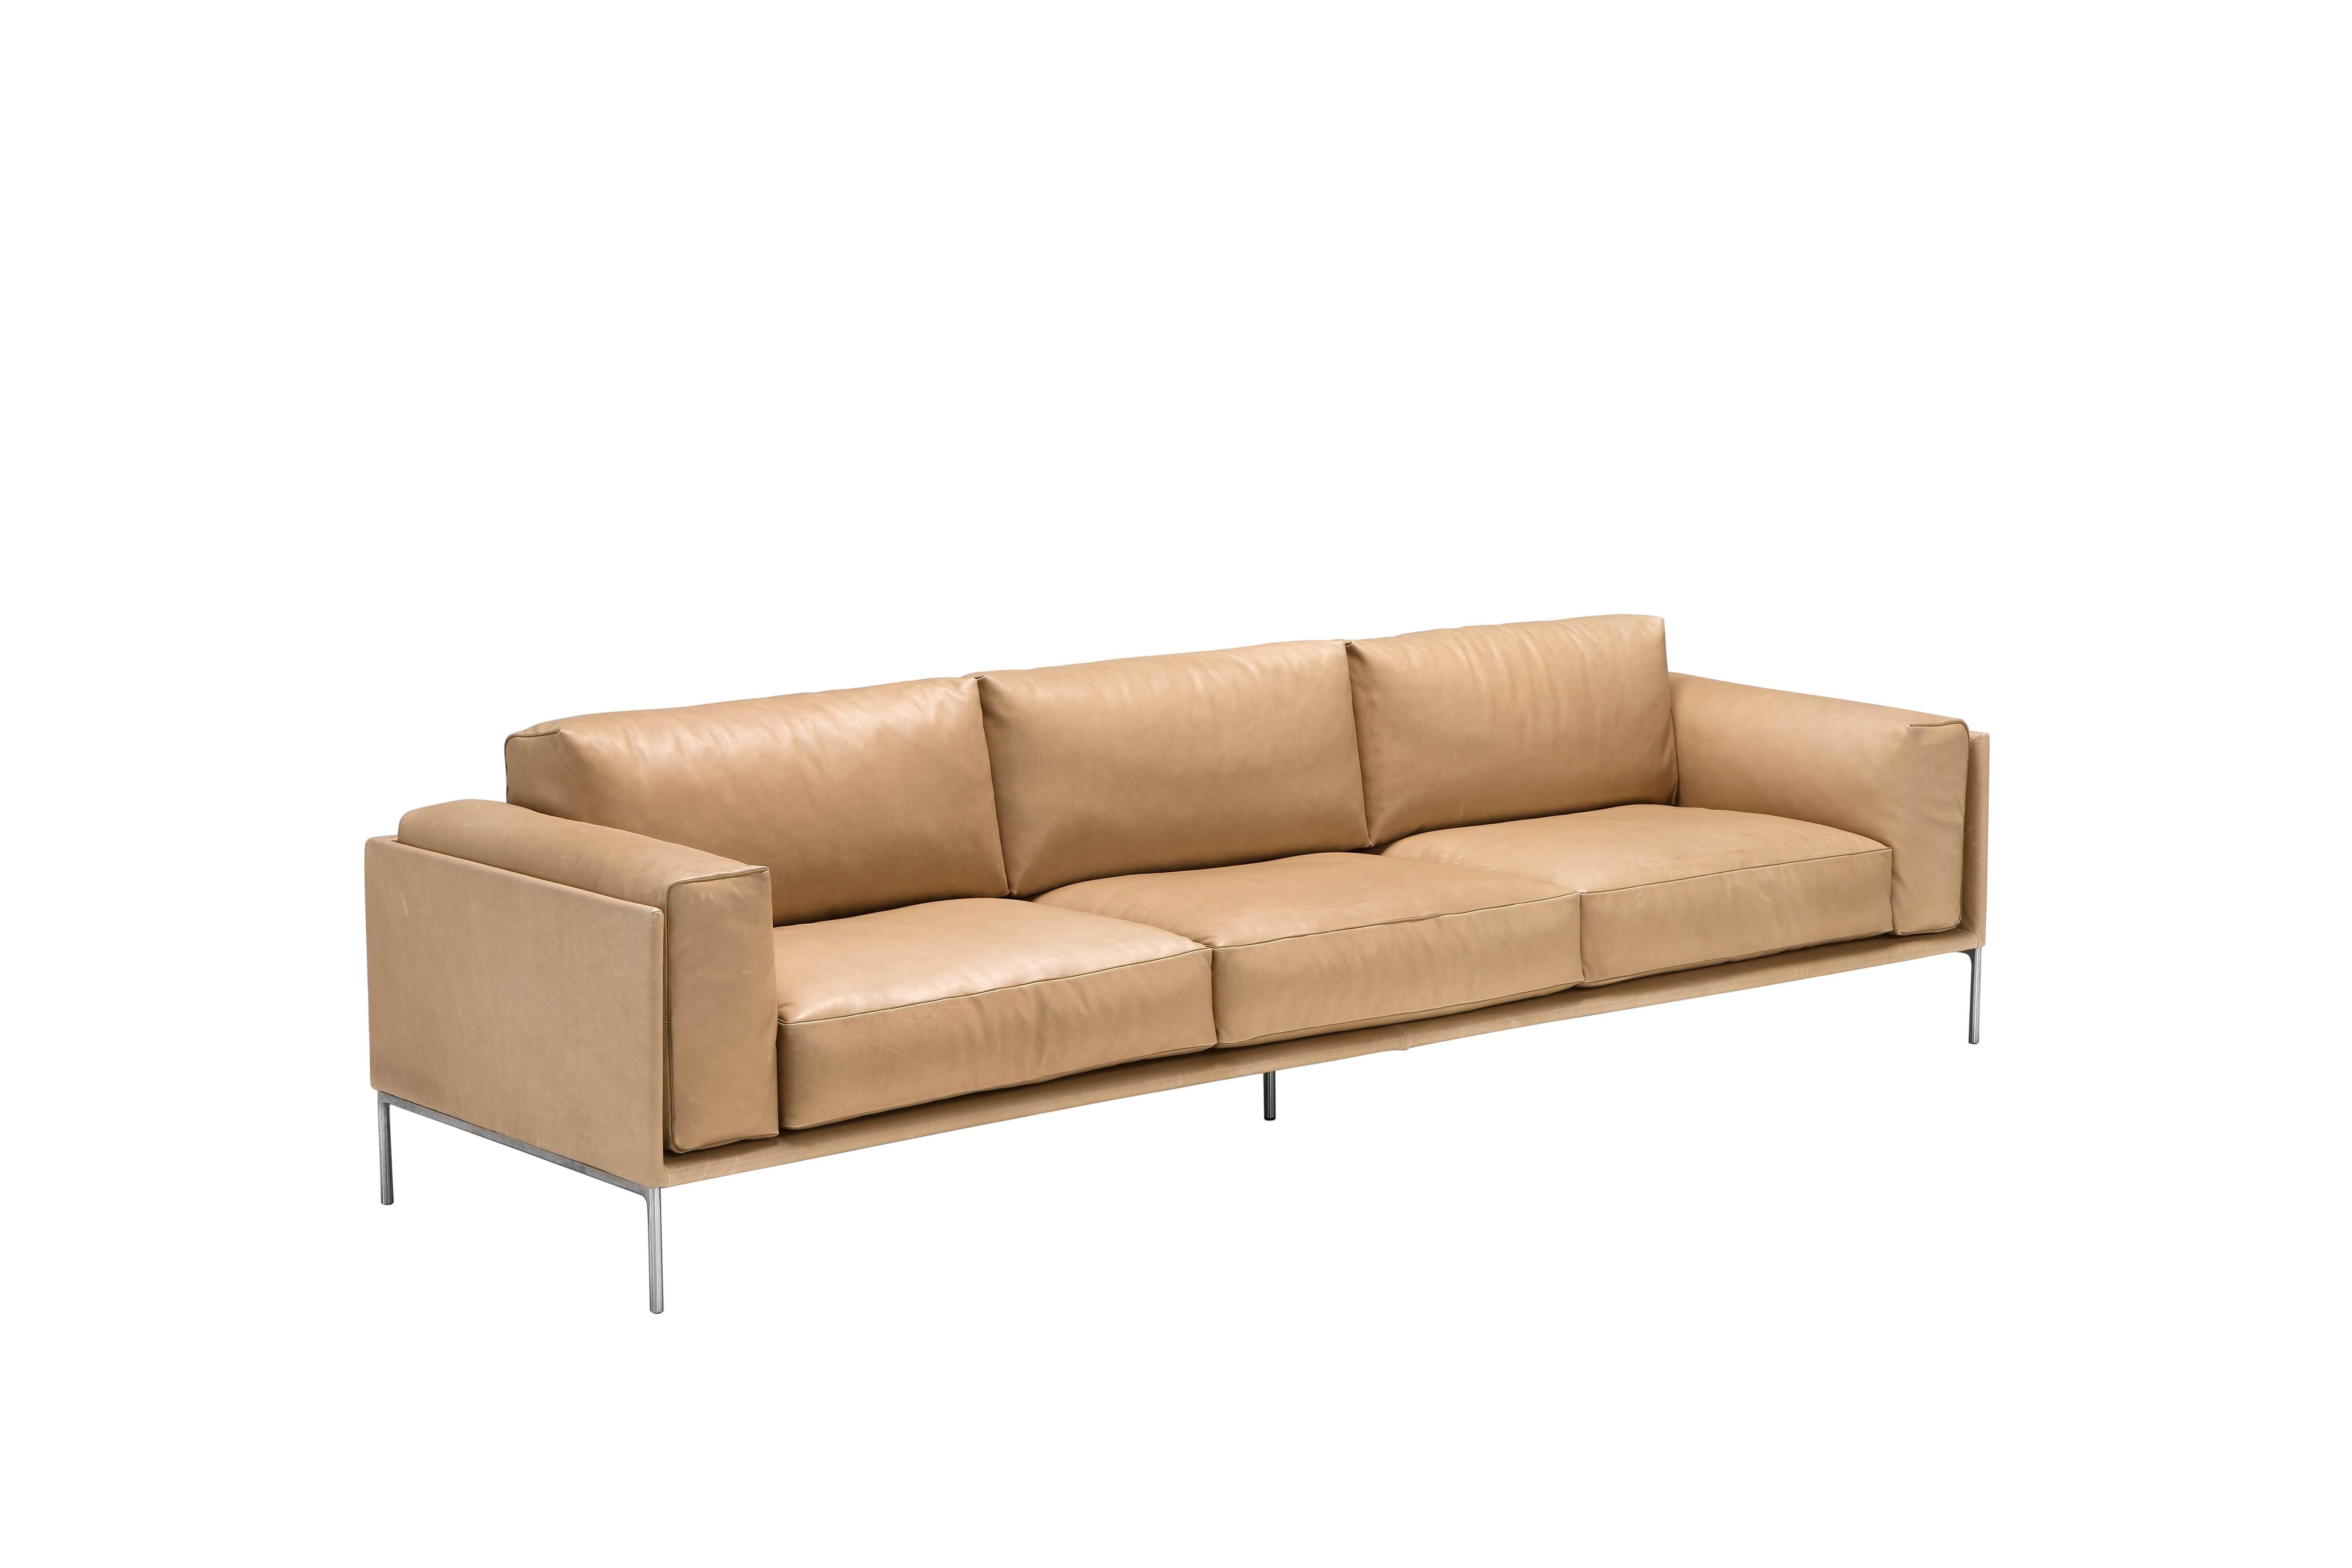 Giorgio sofa in tan by Amura Lab.